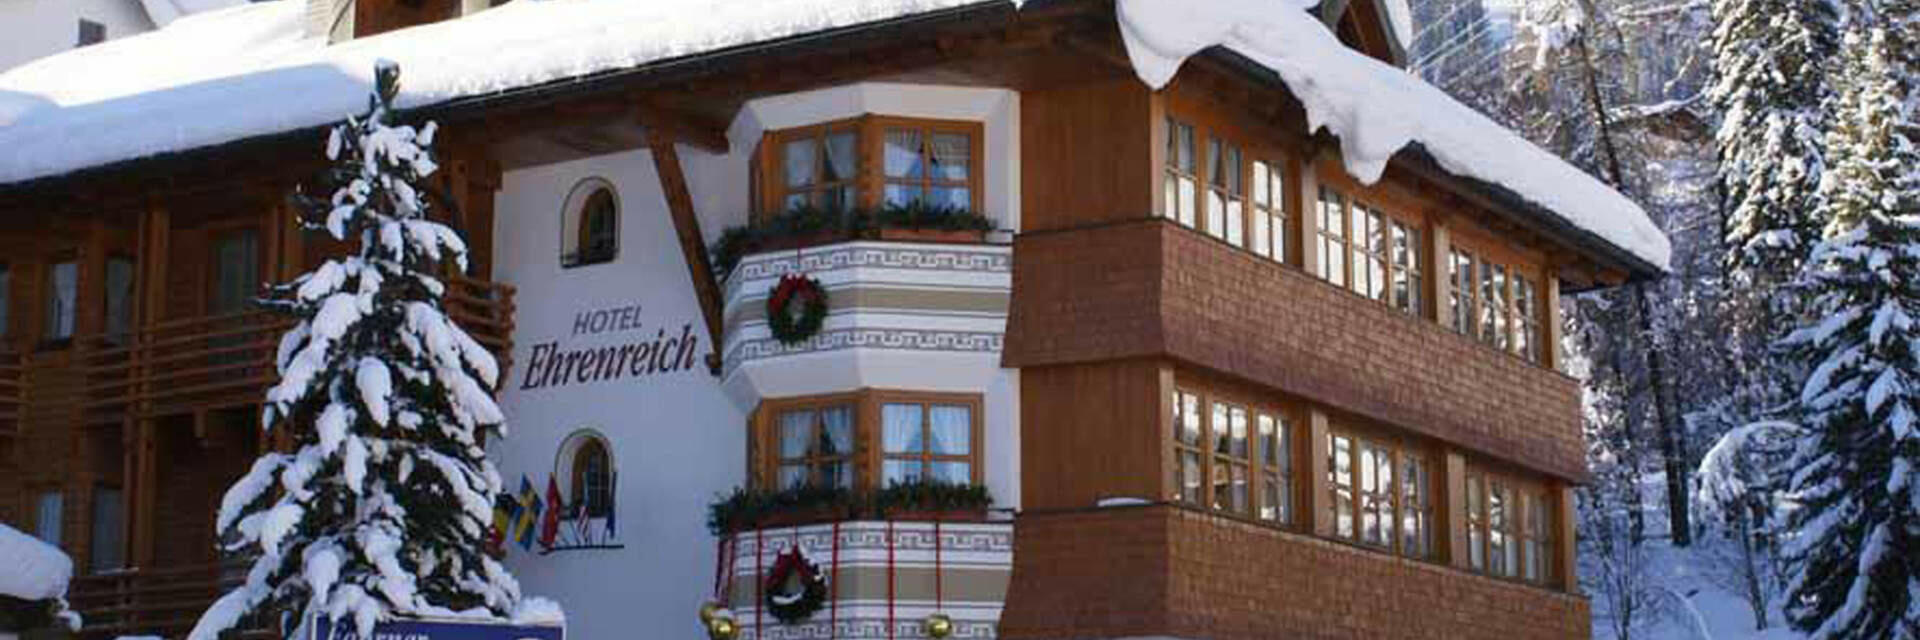 Hotel Ehrenreich